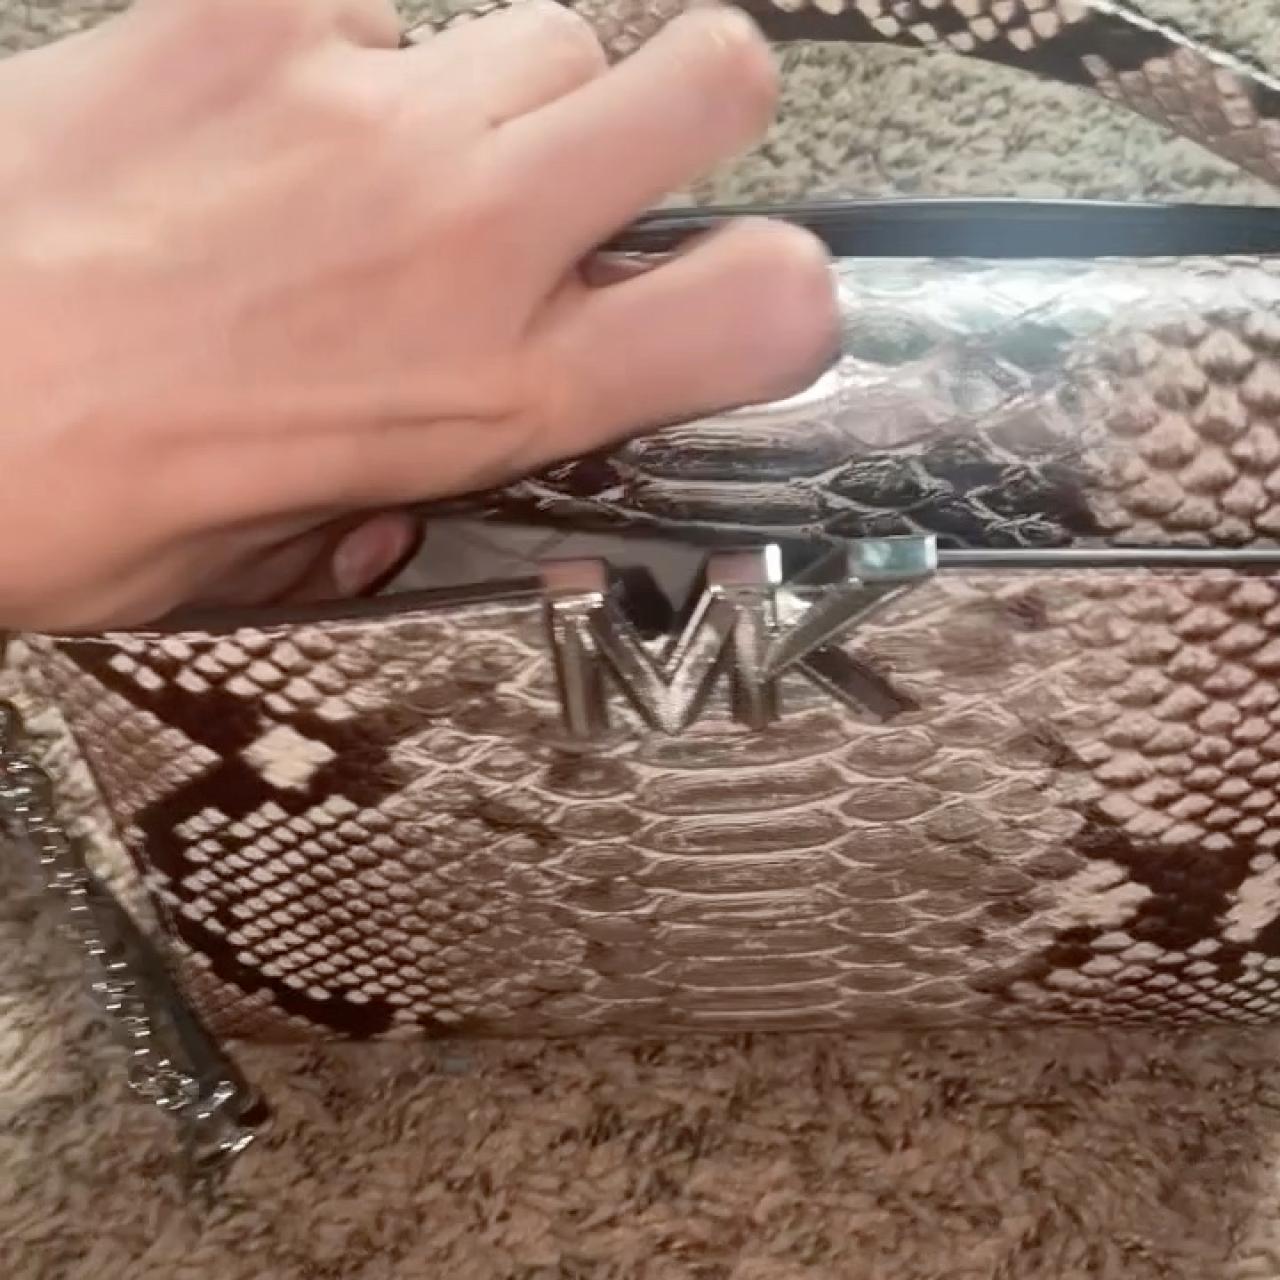 Michael Kors Silver Snake Leather Karlie Small Satchel Shoulder Bag NW –  Design Her Boutique